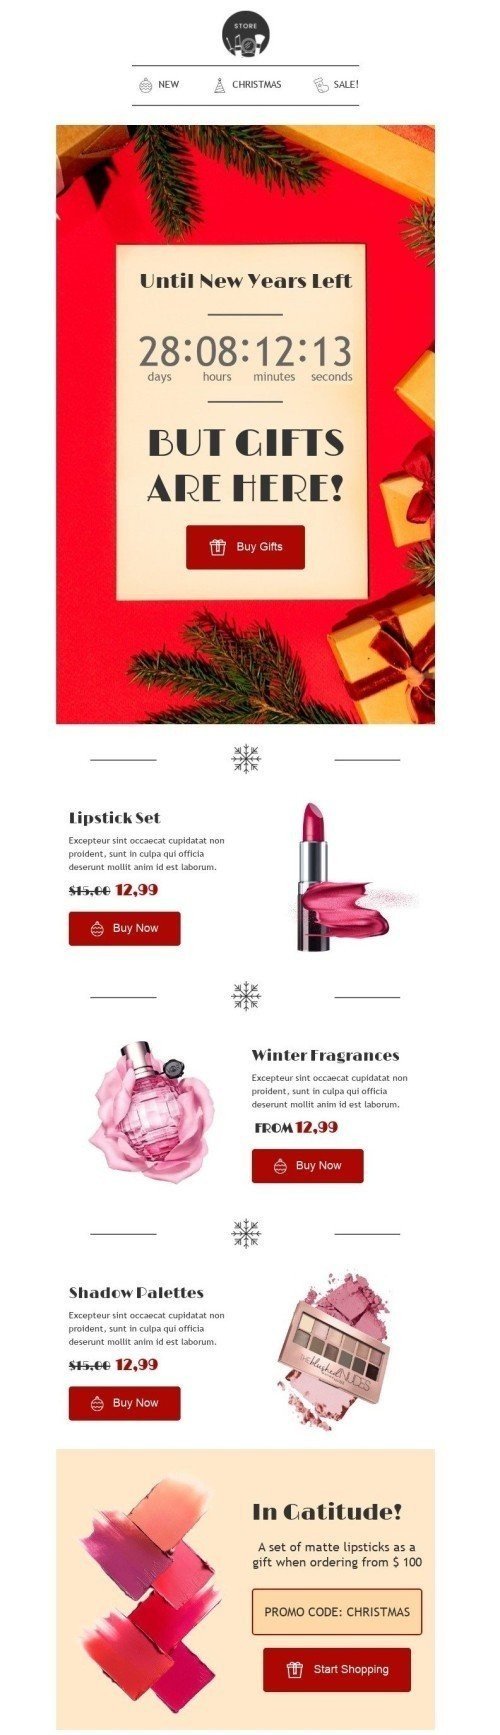 Plantilla de correo electrónico «Los regalos están aquí» de Navidad para la industria de Belleza y cuidado personal Vista de escritorio